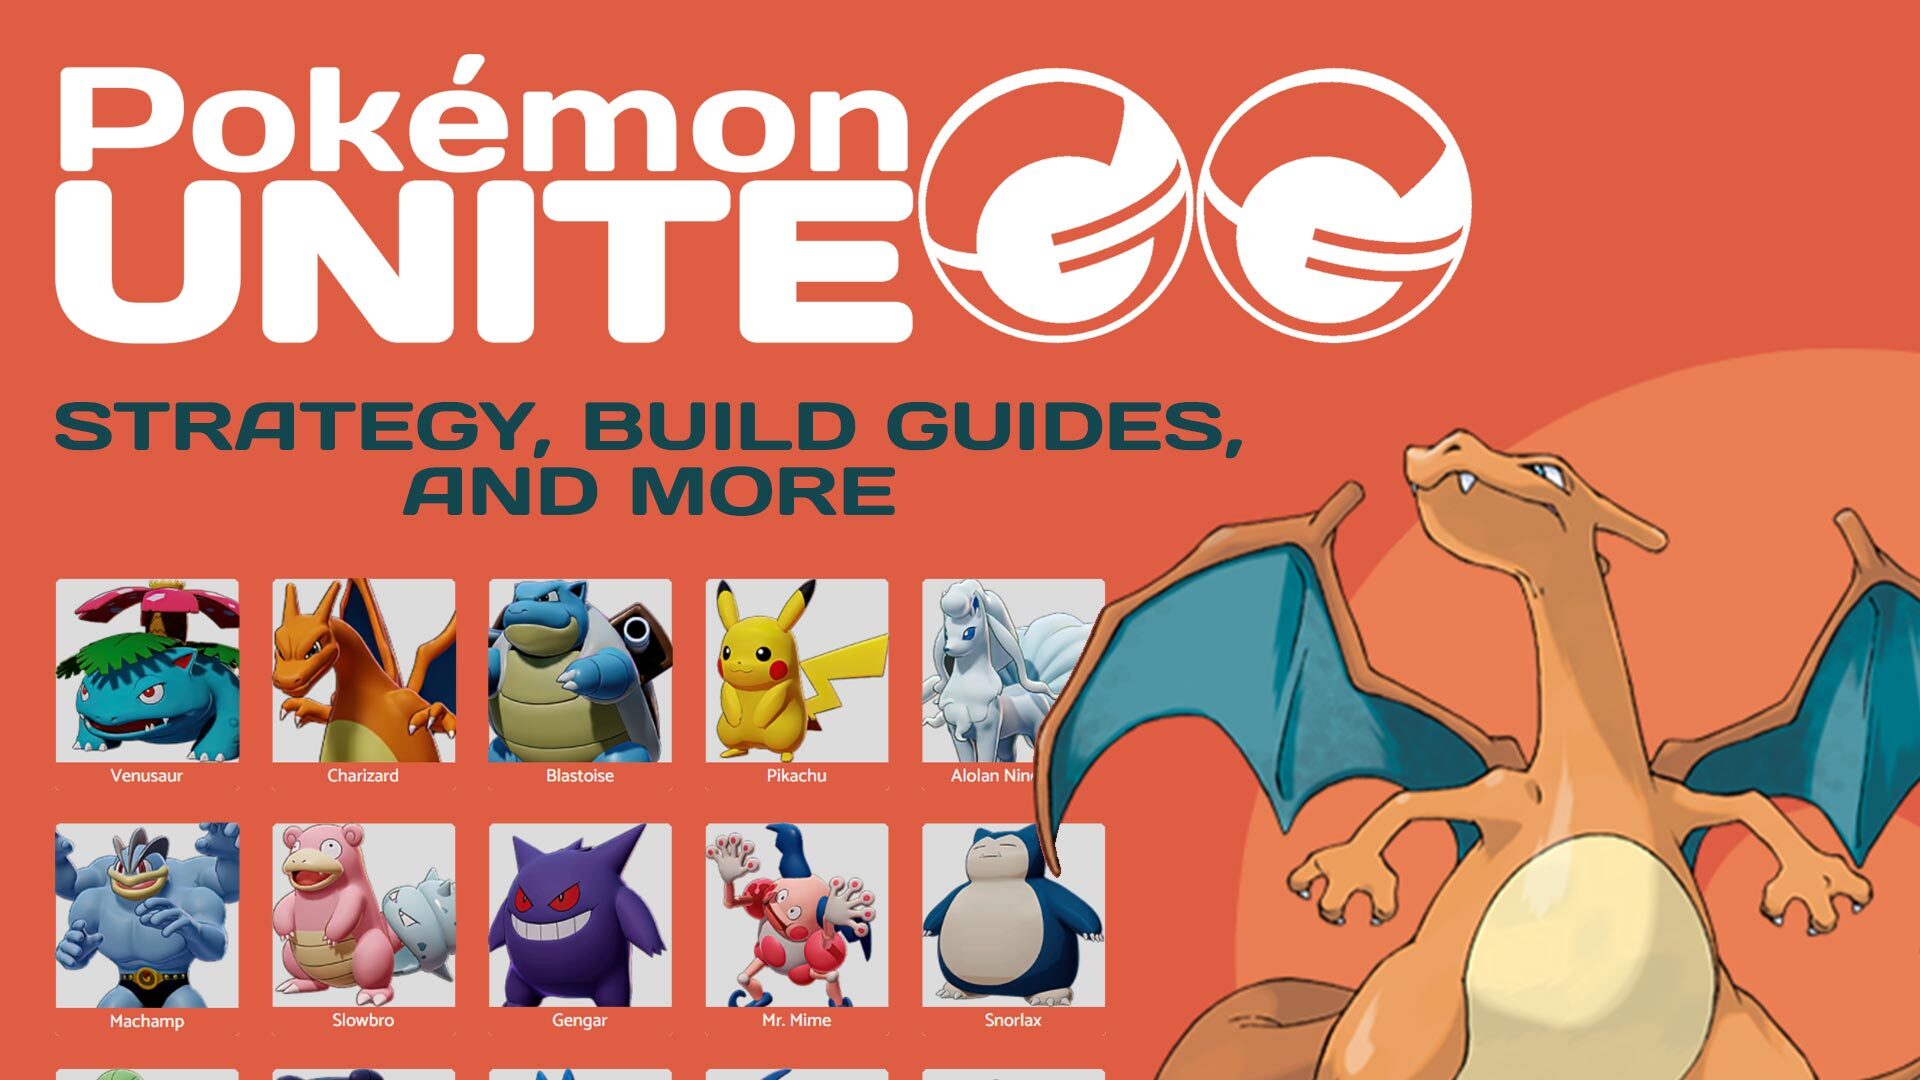 ◓ Guia do Iniciante: Todas as informações e builds recomendadas do Greninja  no jogo Pokémon UNITE